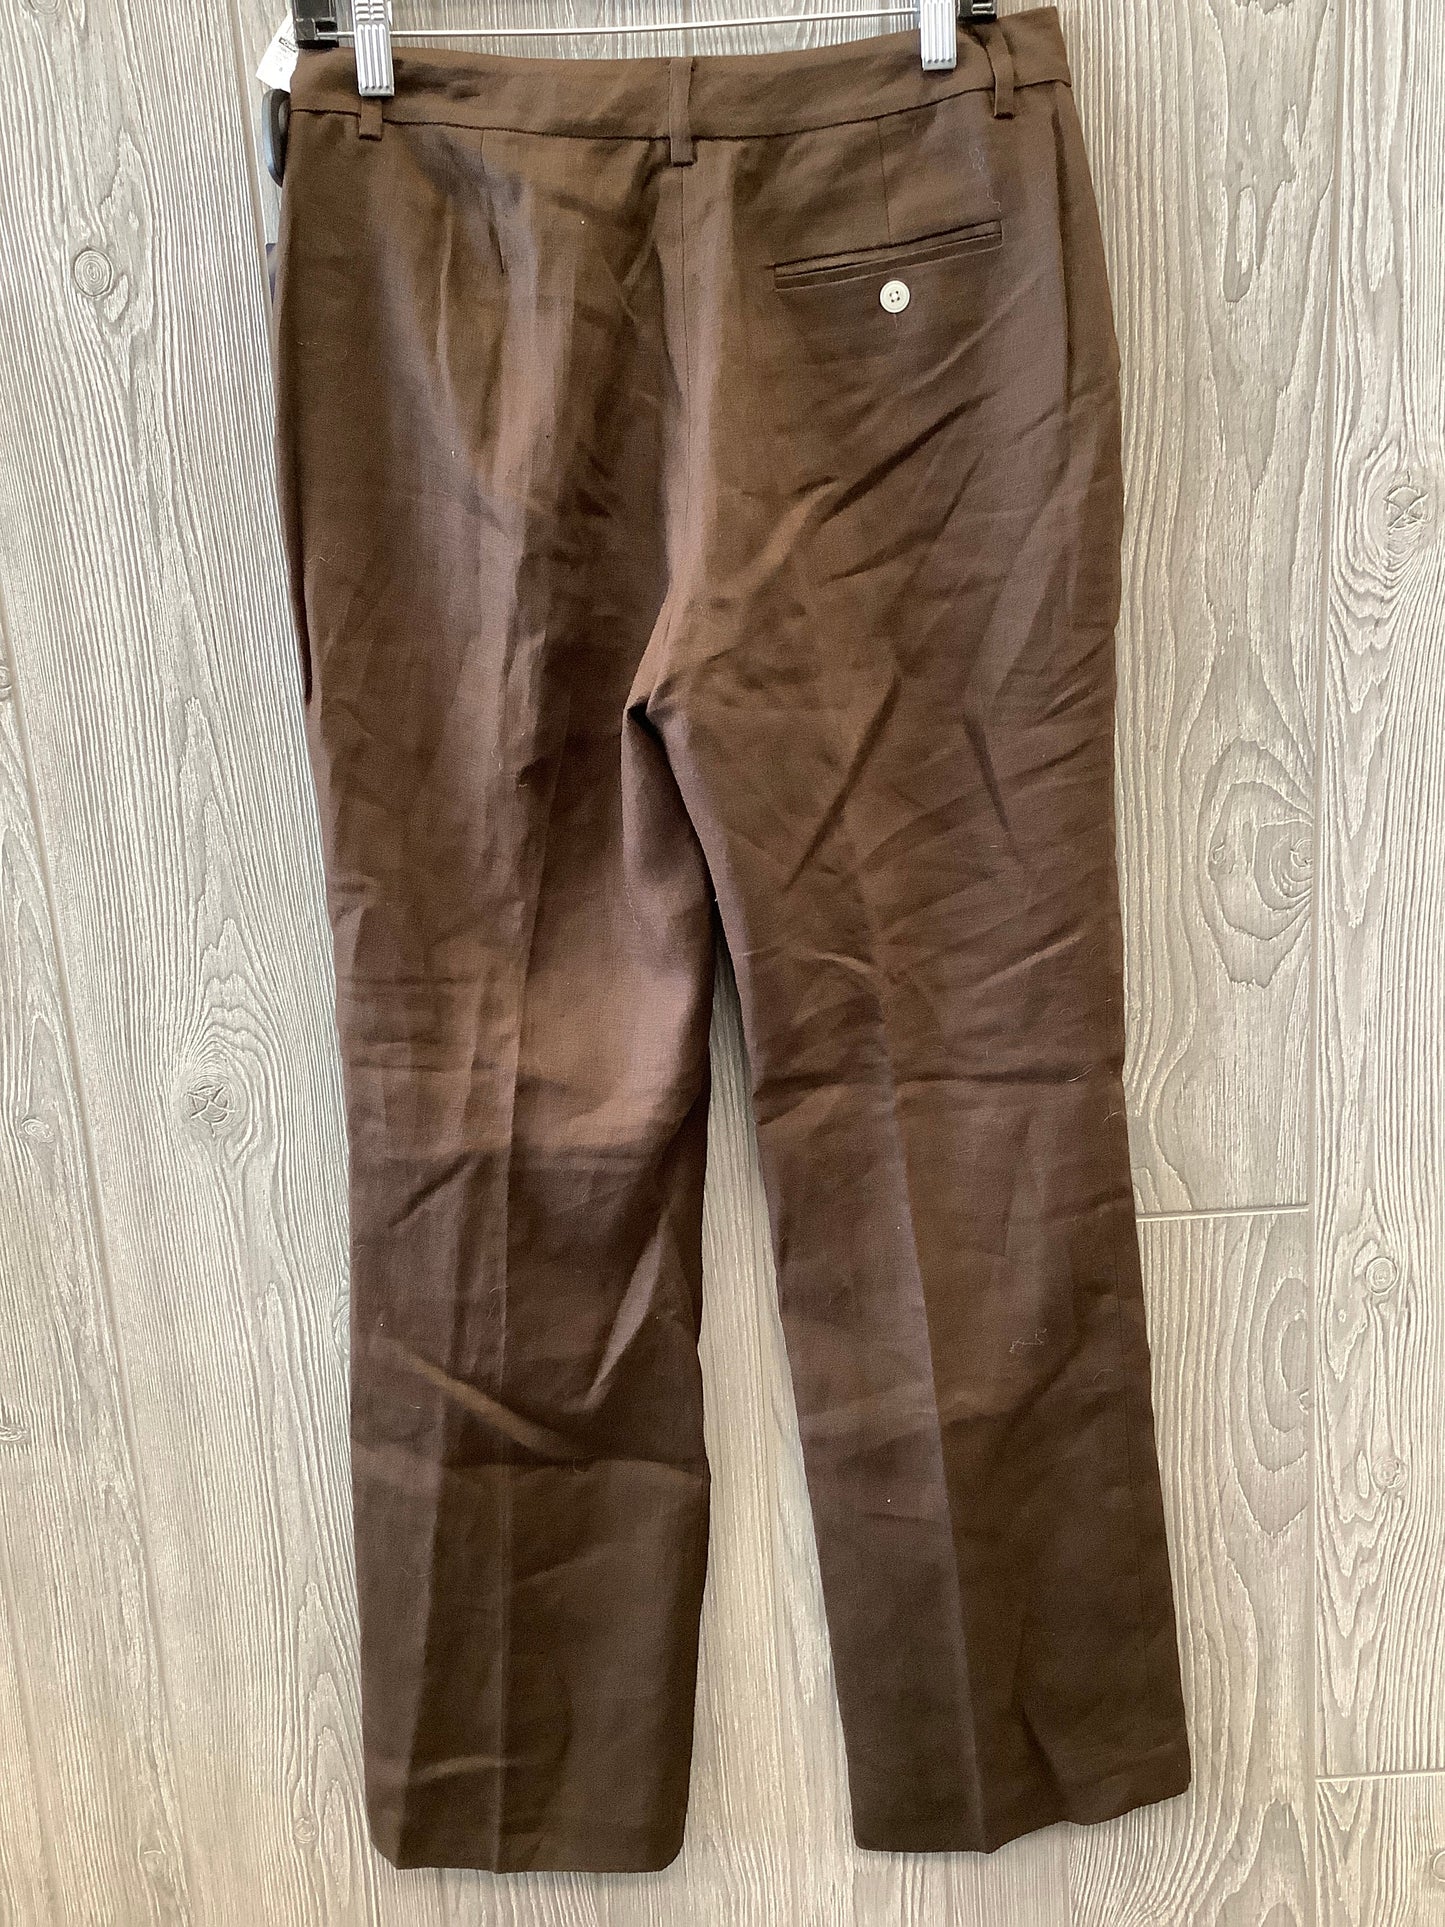 Brown Pants Dress Chaps, Size 8